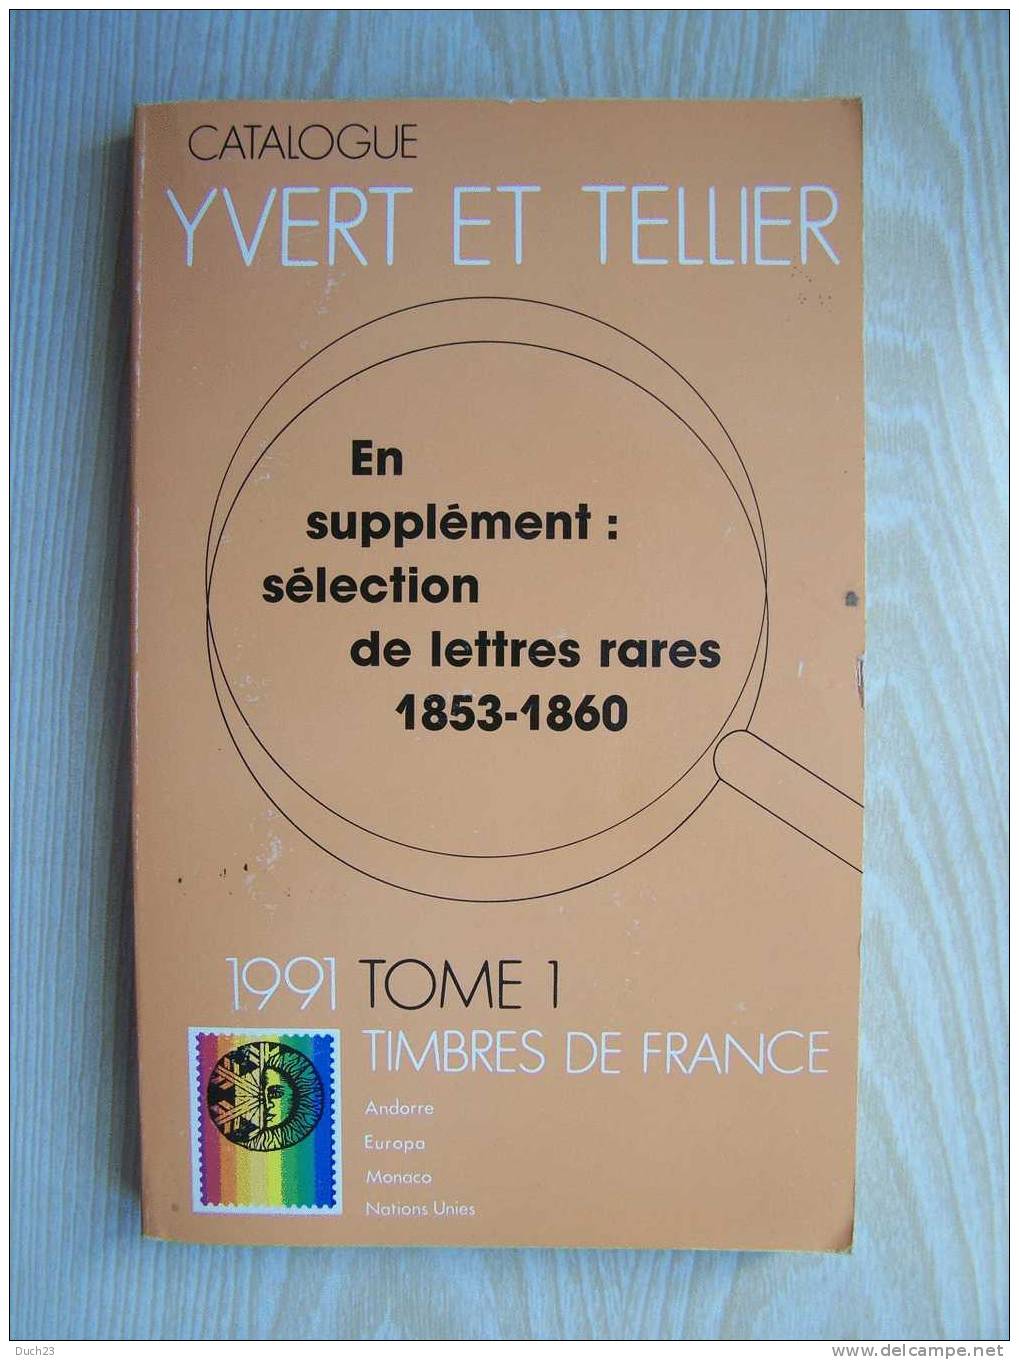 CATALOGUE DE COTATION YVERT ET TELLIER ANNEE 1991 TOME 1 TRES BON ETAT   REF CD - Frankrijk